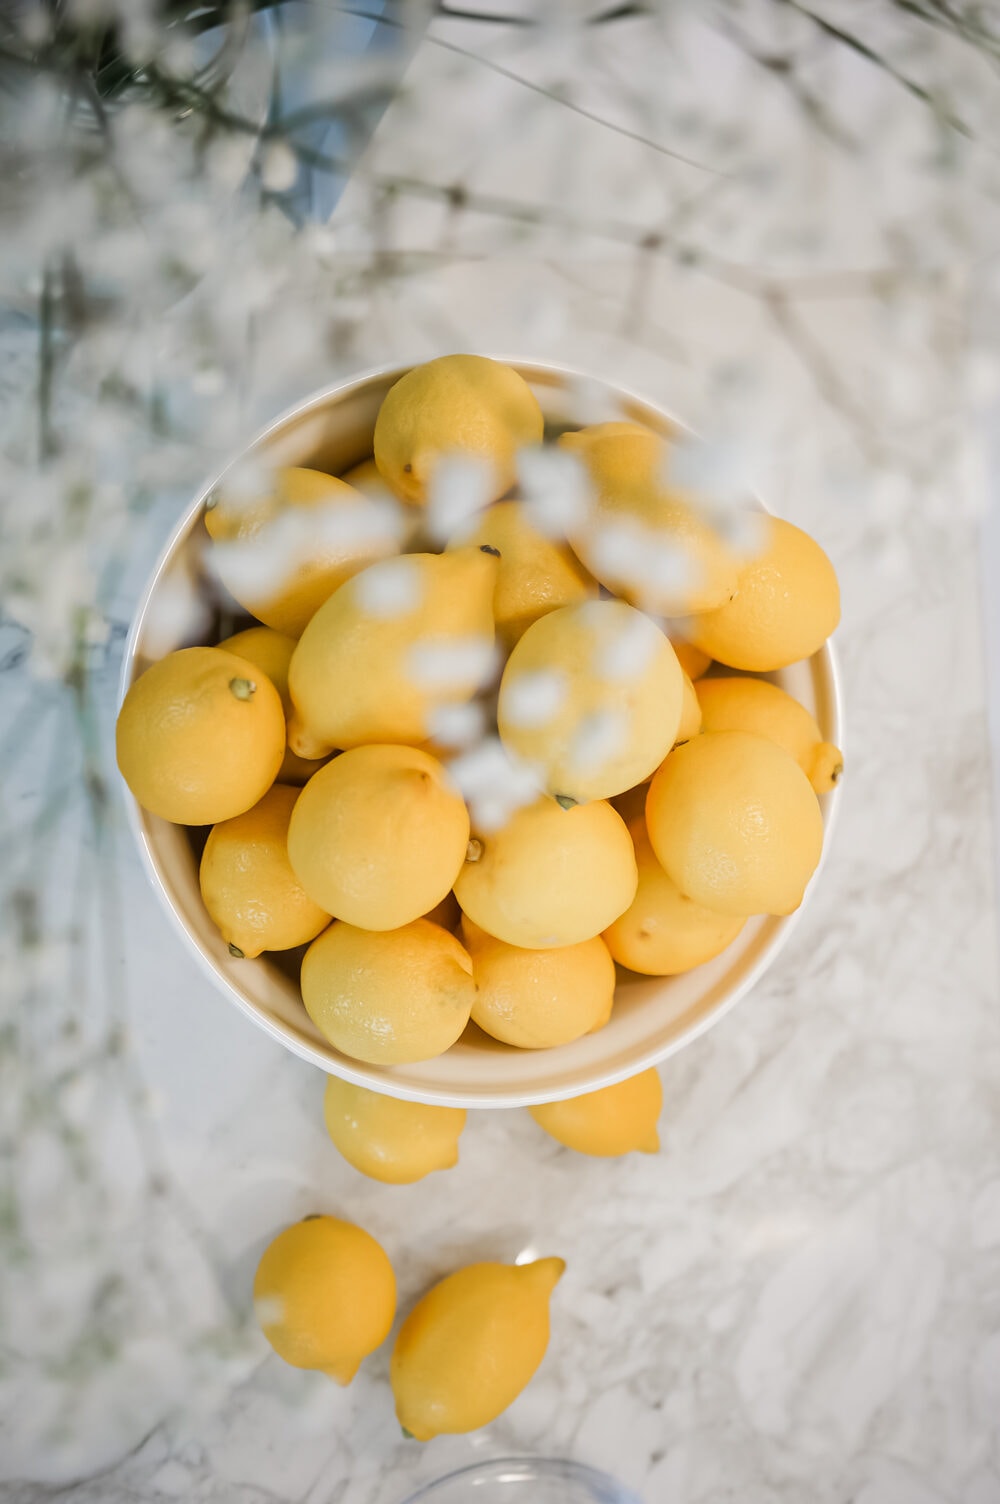 Sitroner i keramikk bolle ideer til påskepynt enkel påskepynt